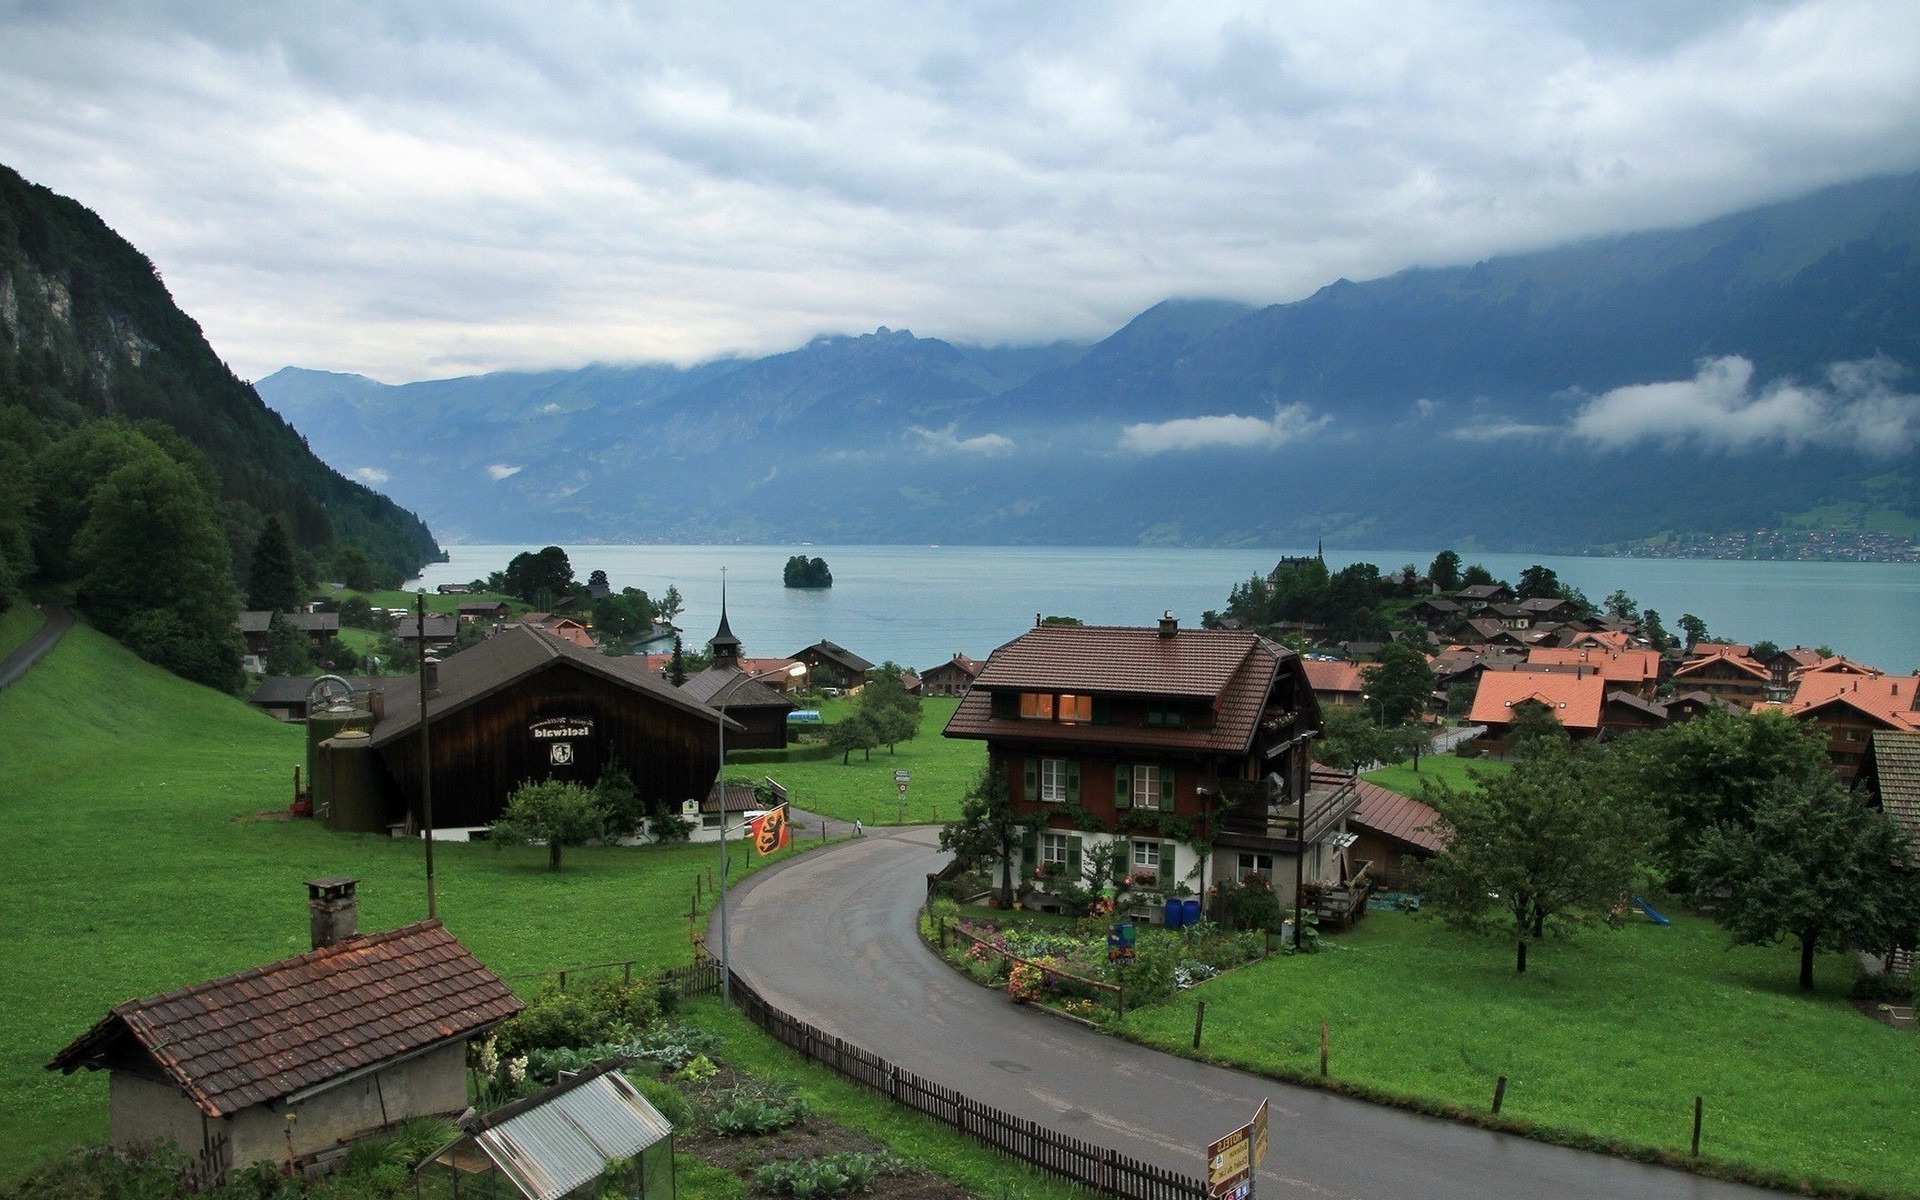 Thụy Sỹ - Đất nước đẹp như tranh vẽ với những cảnh quan tuyệt đẹp. Hãy cùng khám phá vẻ đẹp hoang sơ của các đồi núi, những con suối trong xanh và những ngôi làng yên tĩnh. Những hình ảnh của Thụy Sỹ sẽ thật sự là một trải nghiệm đáng nhớ!